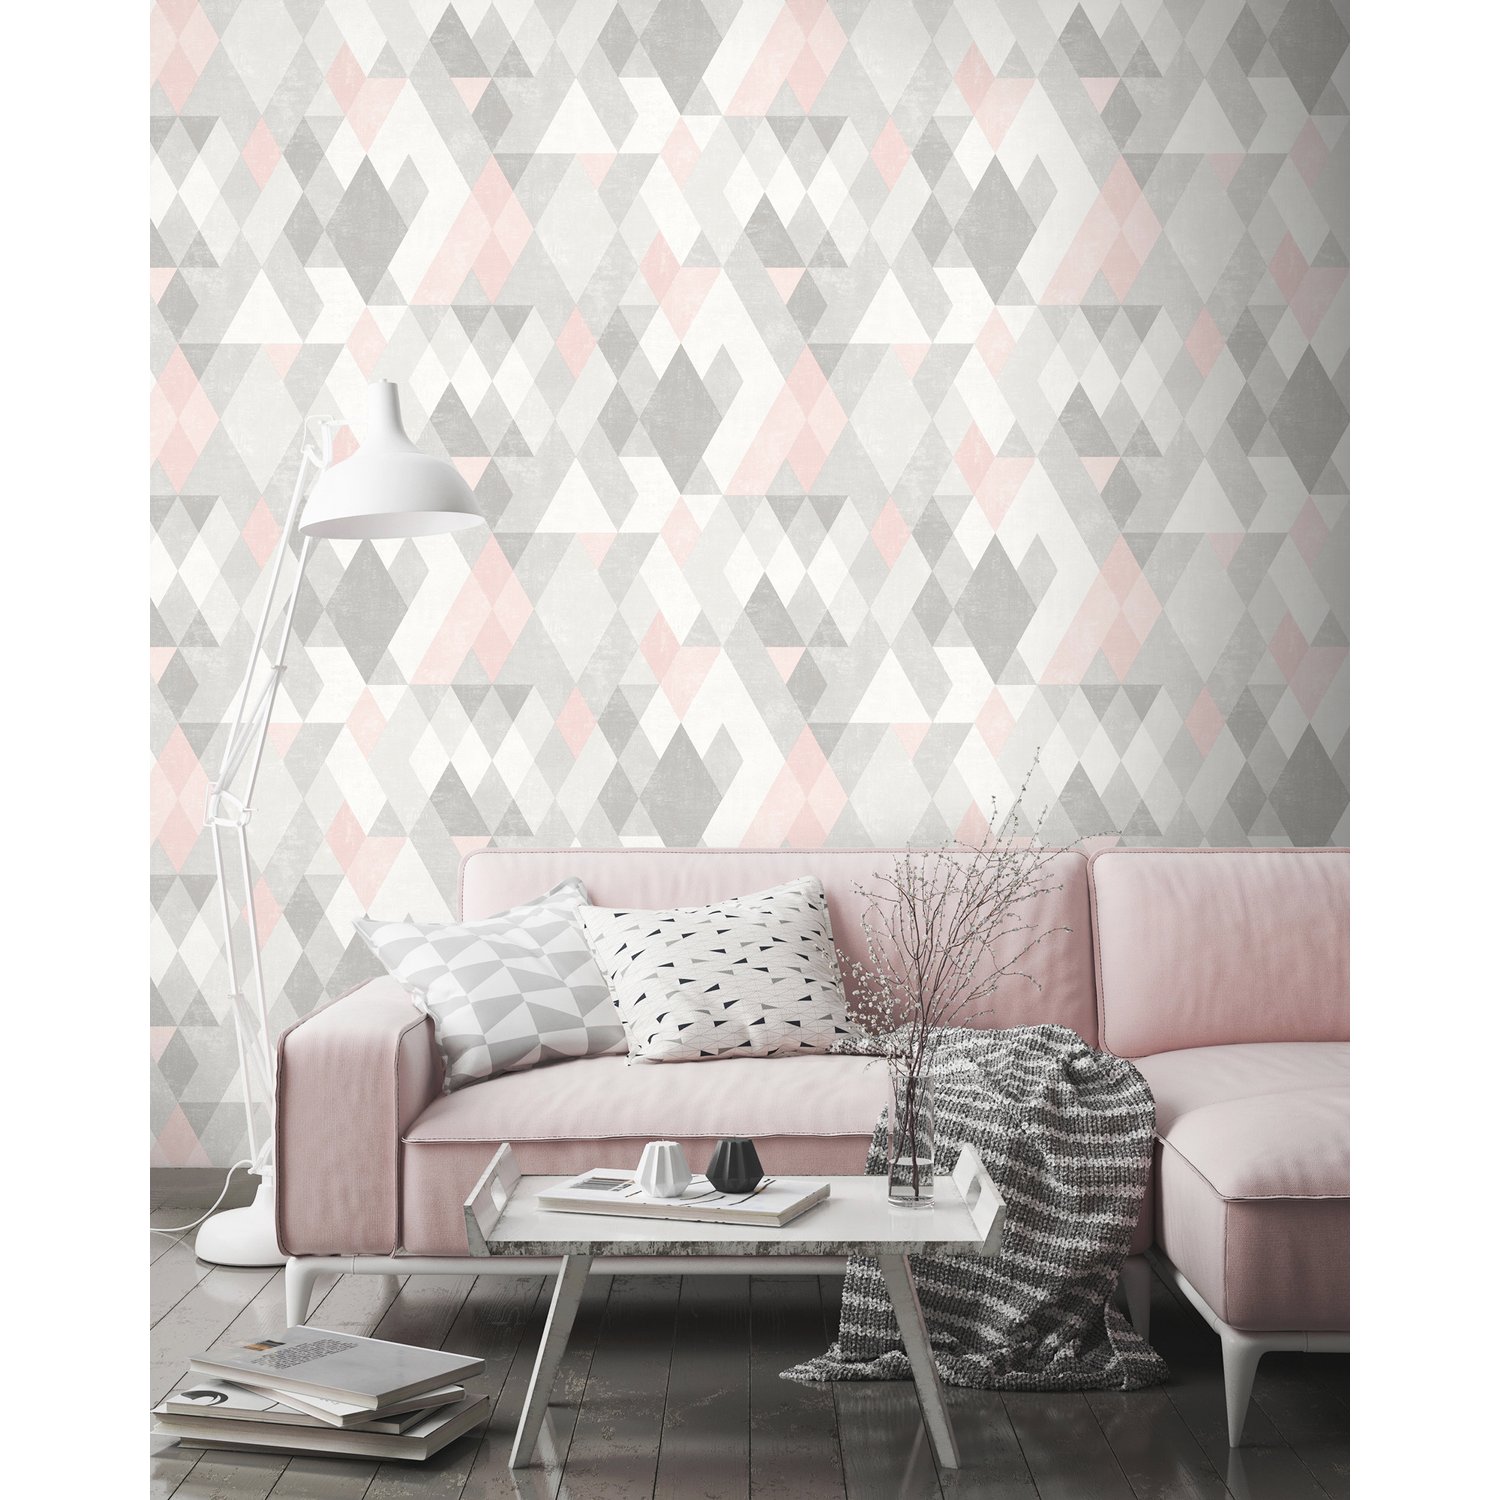 Ugepa - Hexagone L59809 , HD Wallpaper & Backgrounds